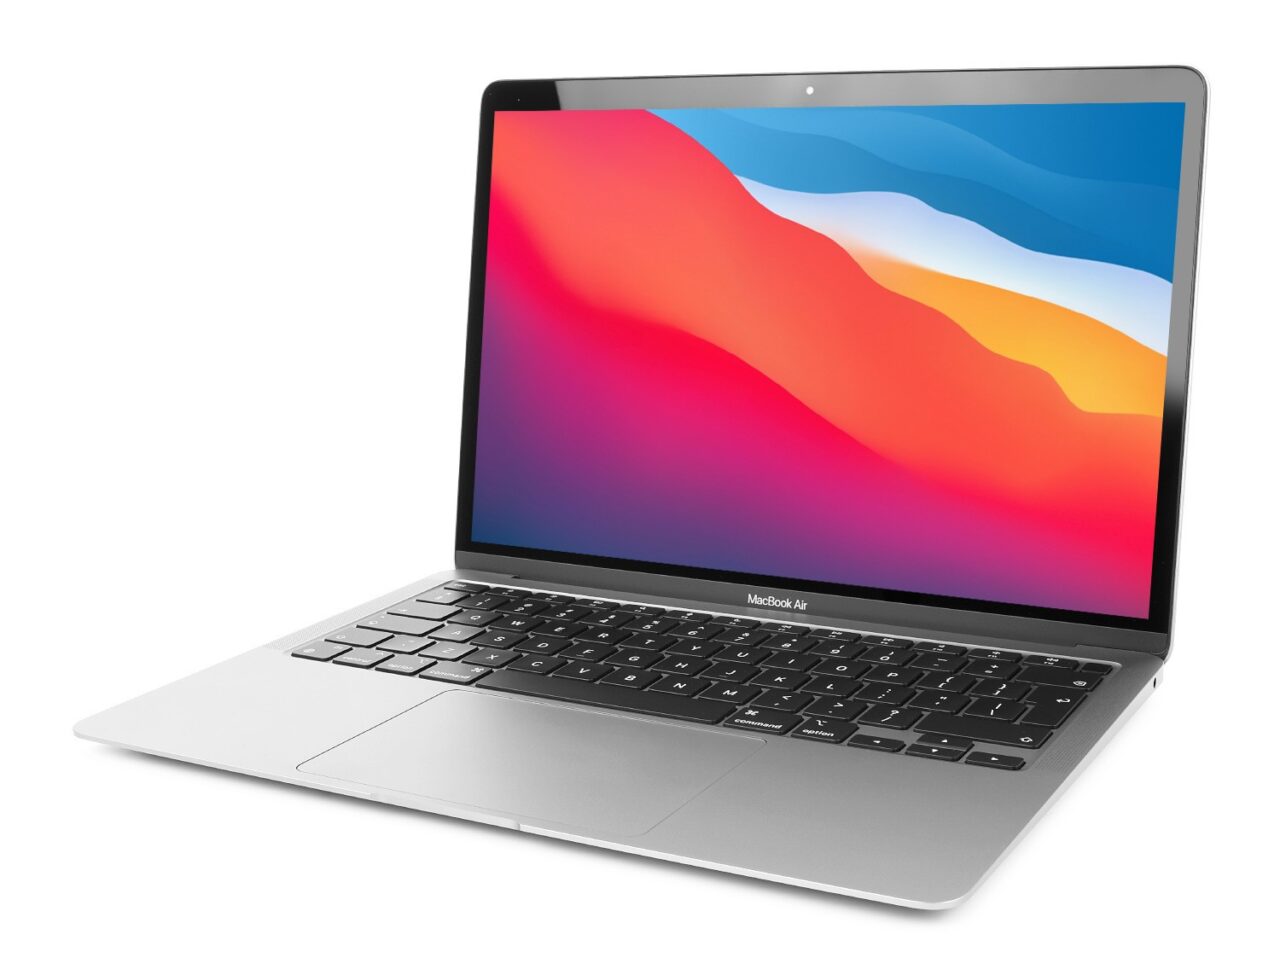 Laptop MacBook Air na białym tle z kolorowym wyświetlaczem.